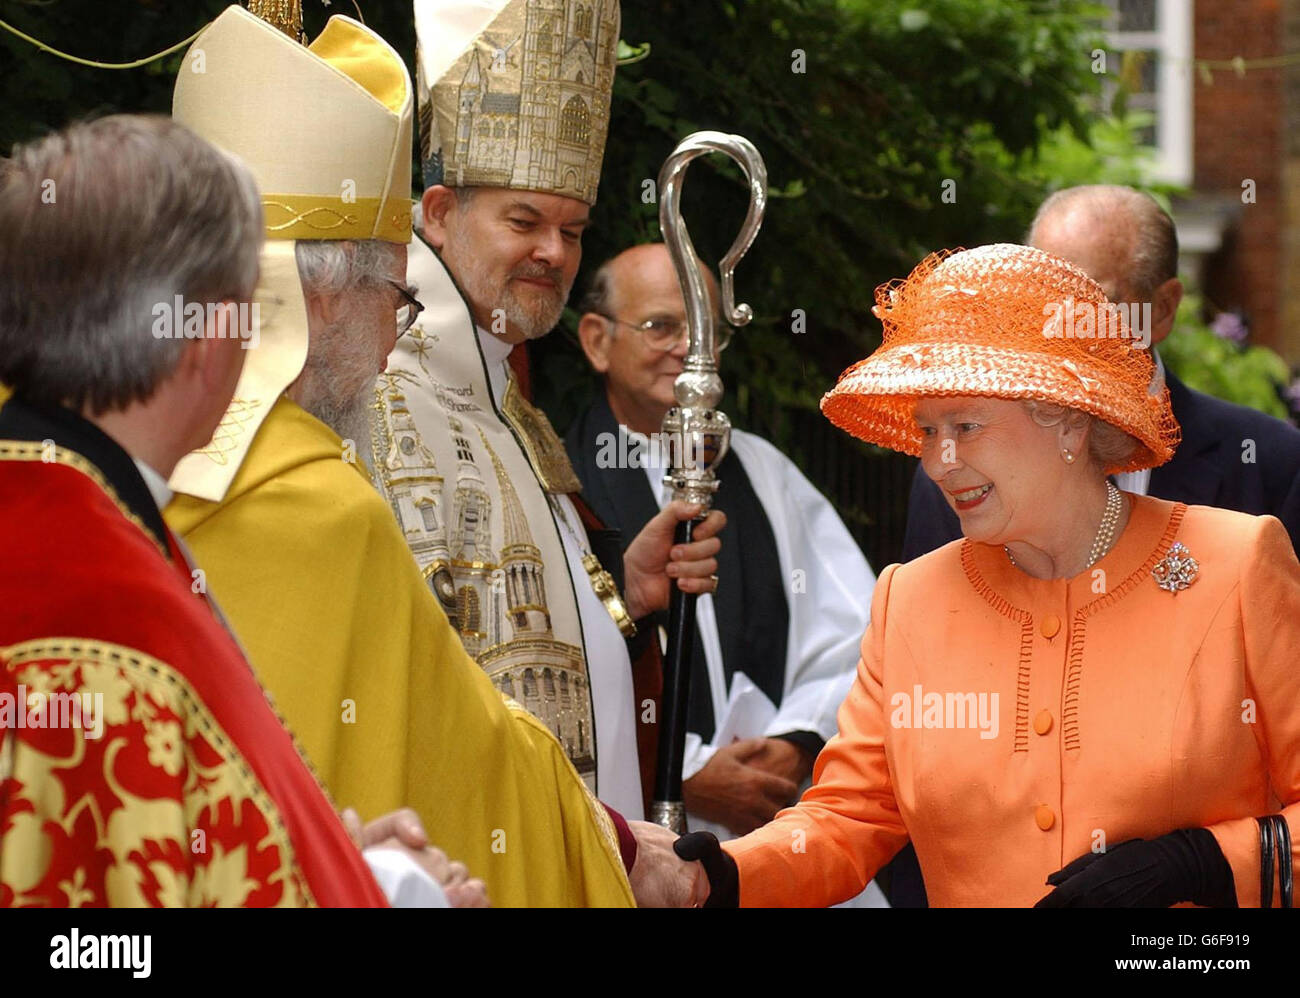 Die Königin (rechts) trifft den Erzbischof von Canterbury, Dr. Rowan Williams (links), während ihres Besuchs in St. Bartholomews dem Großen, Ost-London. Ihre Majestät nahm in Begleitung von Prinz Philip an einem Danksagesdienst zur Feier des 50. Jahrestages der historischen Kirchen Teil. * ... Vertrauen In Die Erhaltung. Stockfoto